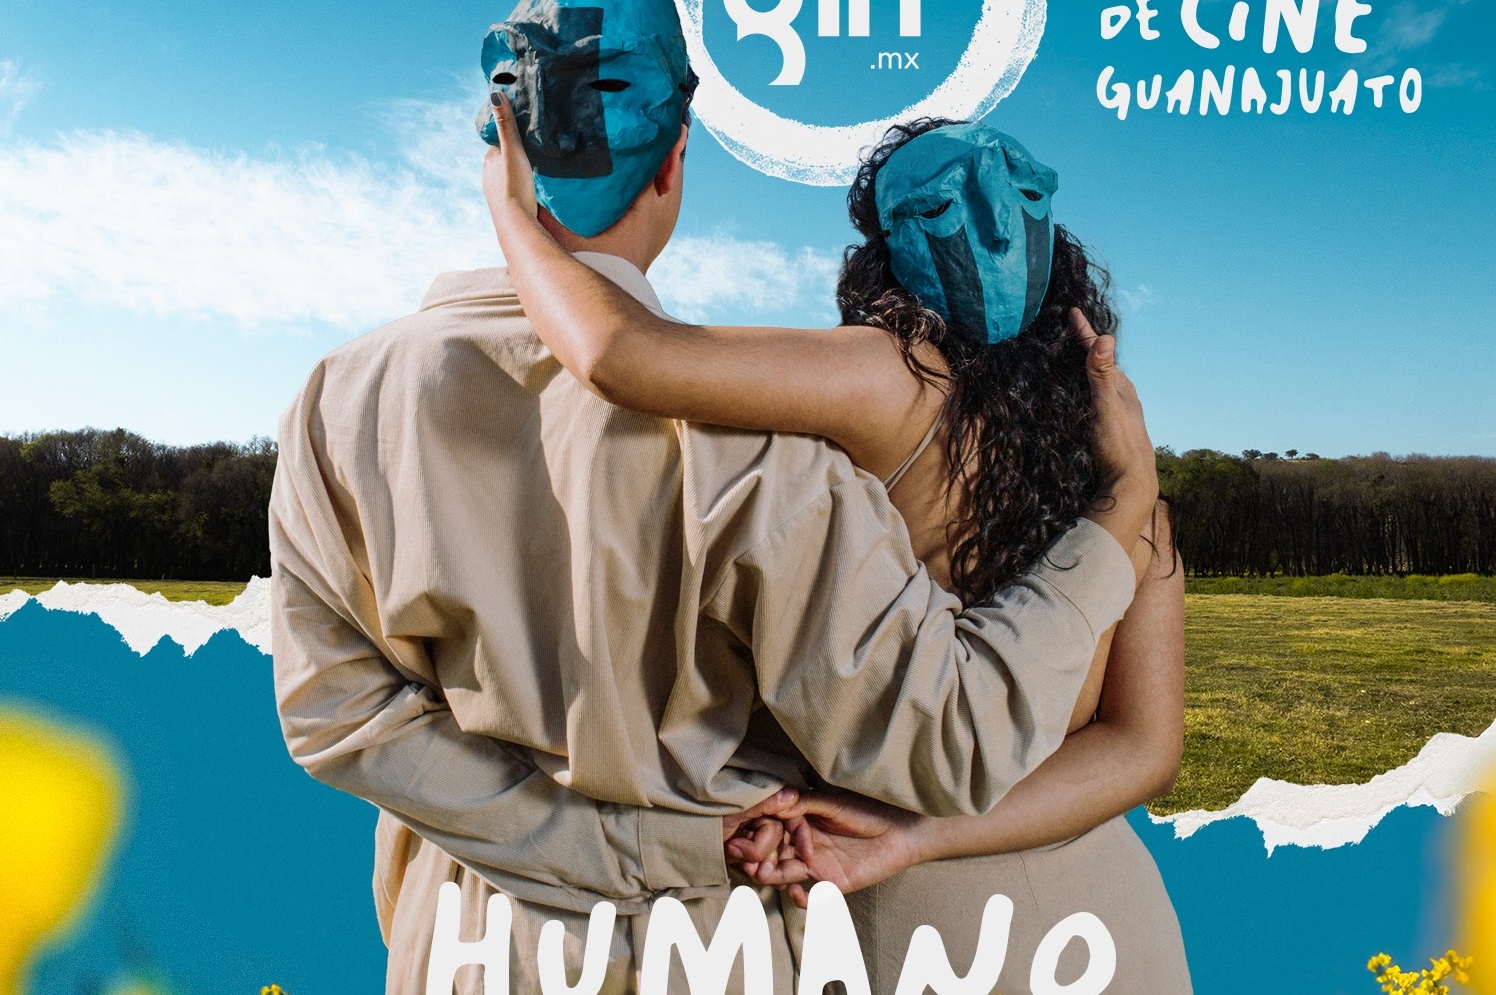 El cine, herramienta para reflexionar sobre la importancia de la humanidad: GIFF